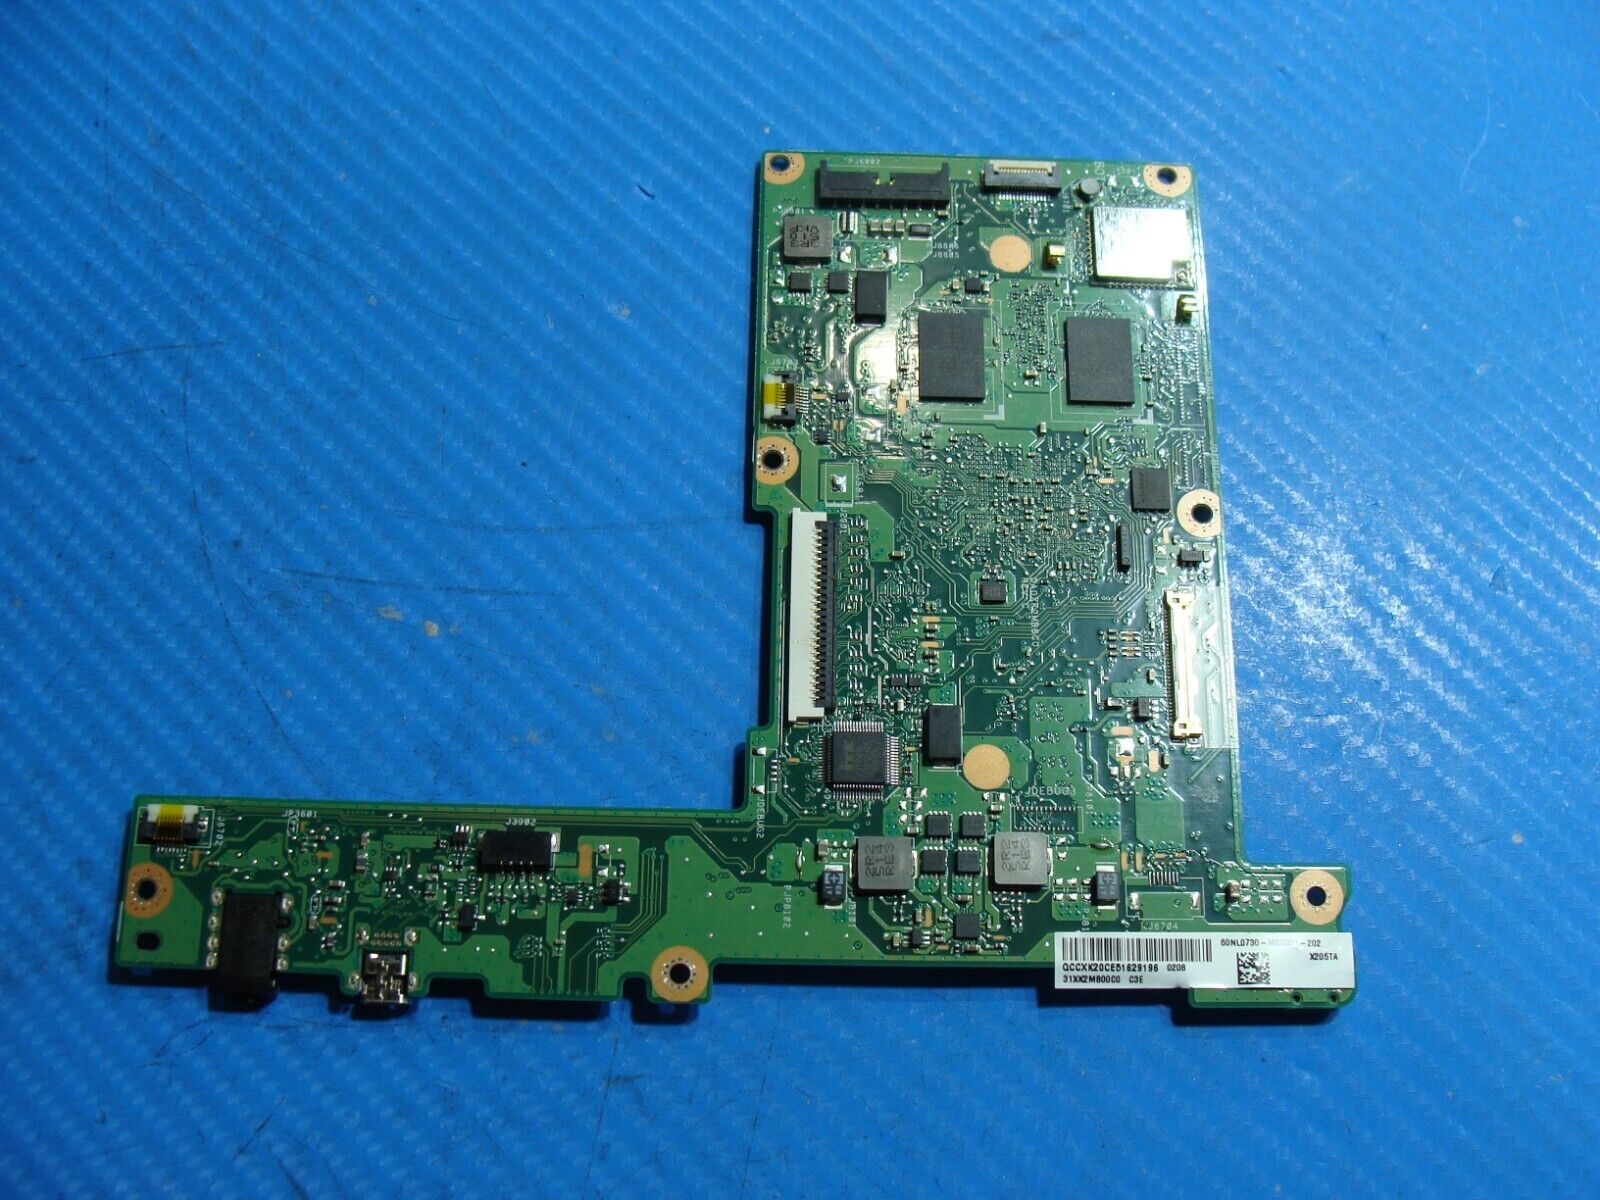 Asus EeeBook X205TA-SATM0404G Intel Atom z3735F Motherboard 60NL0730-MB3001 ASIS